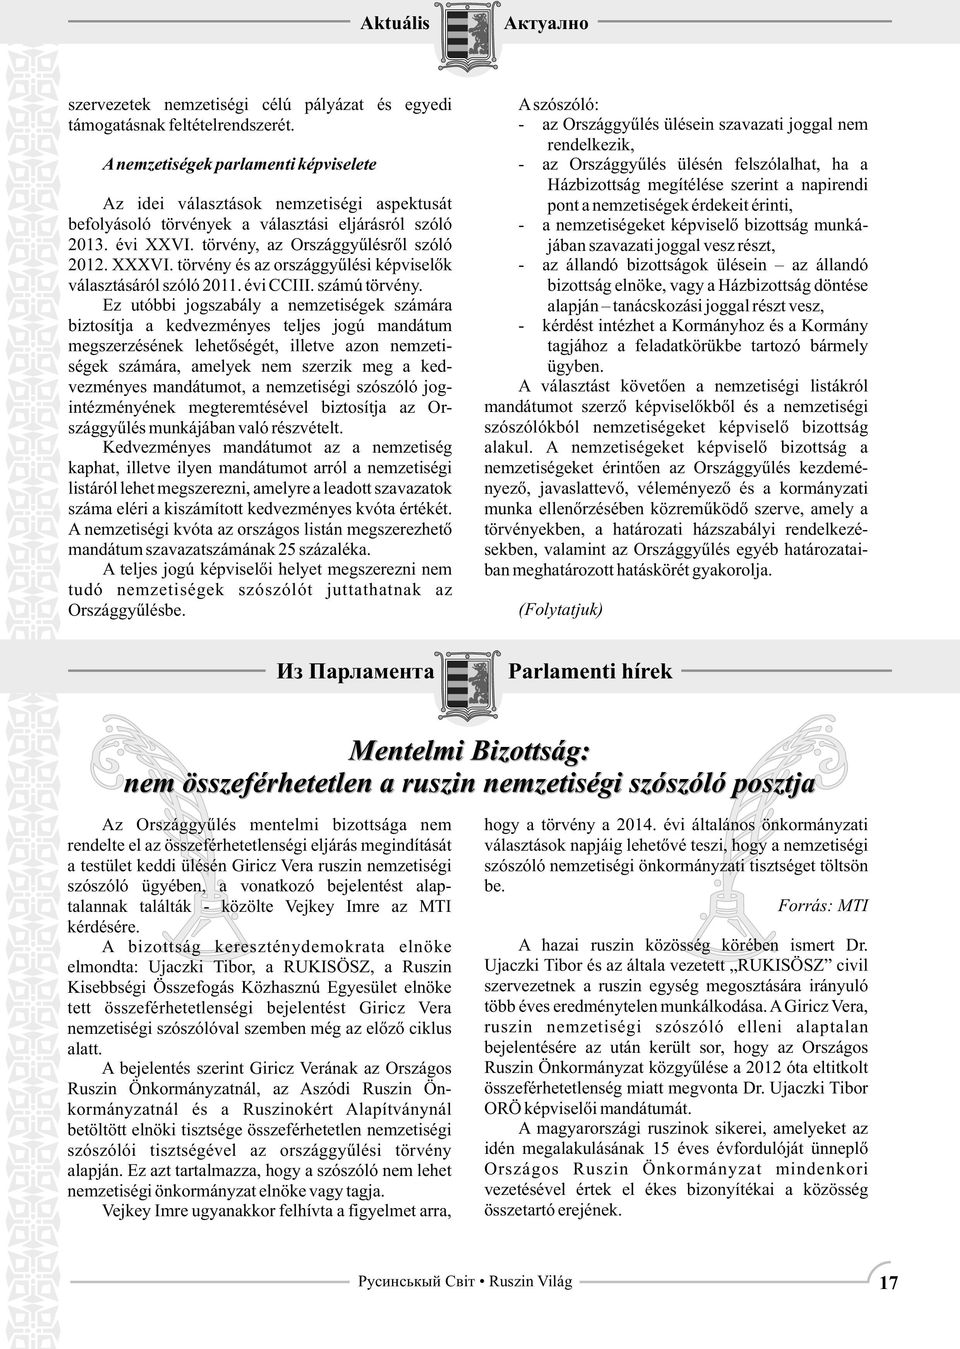 törvény és az országgyűlési képviselők választásáról szóló 2011. évi CCIII. számú törvény.